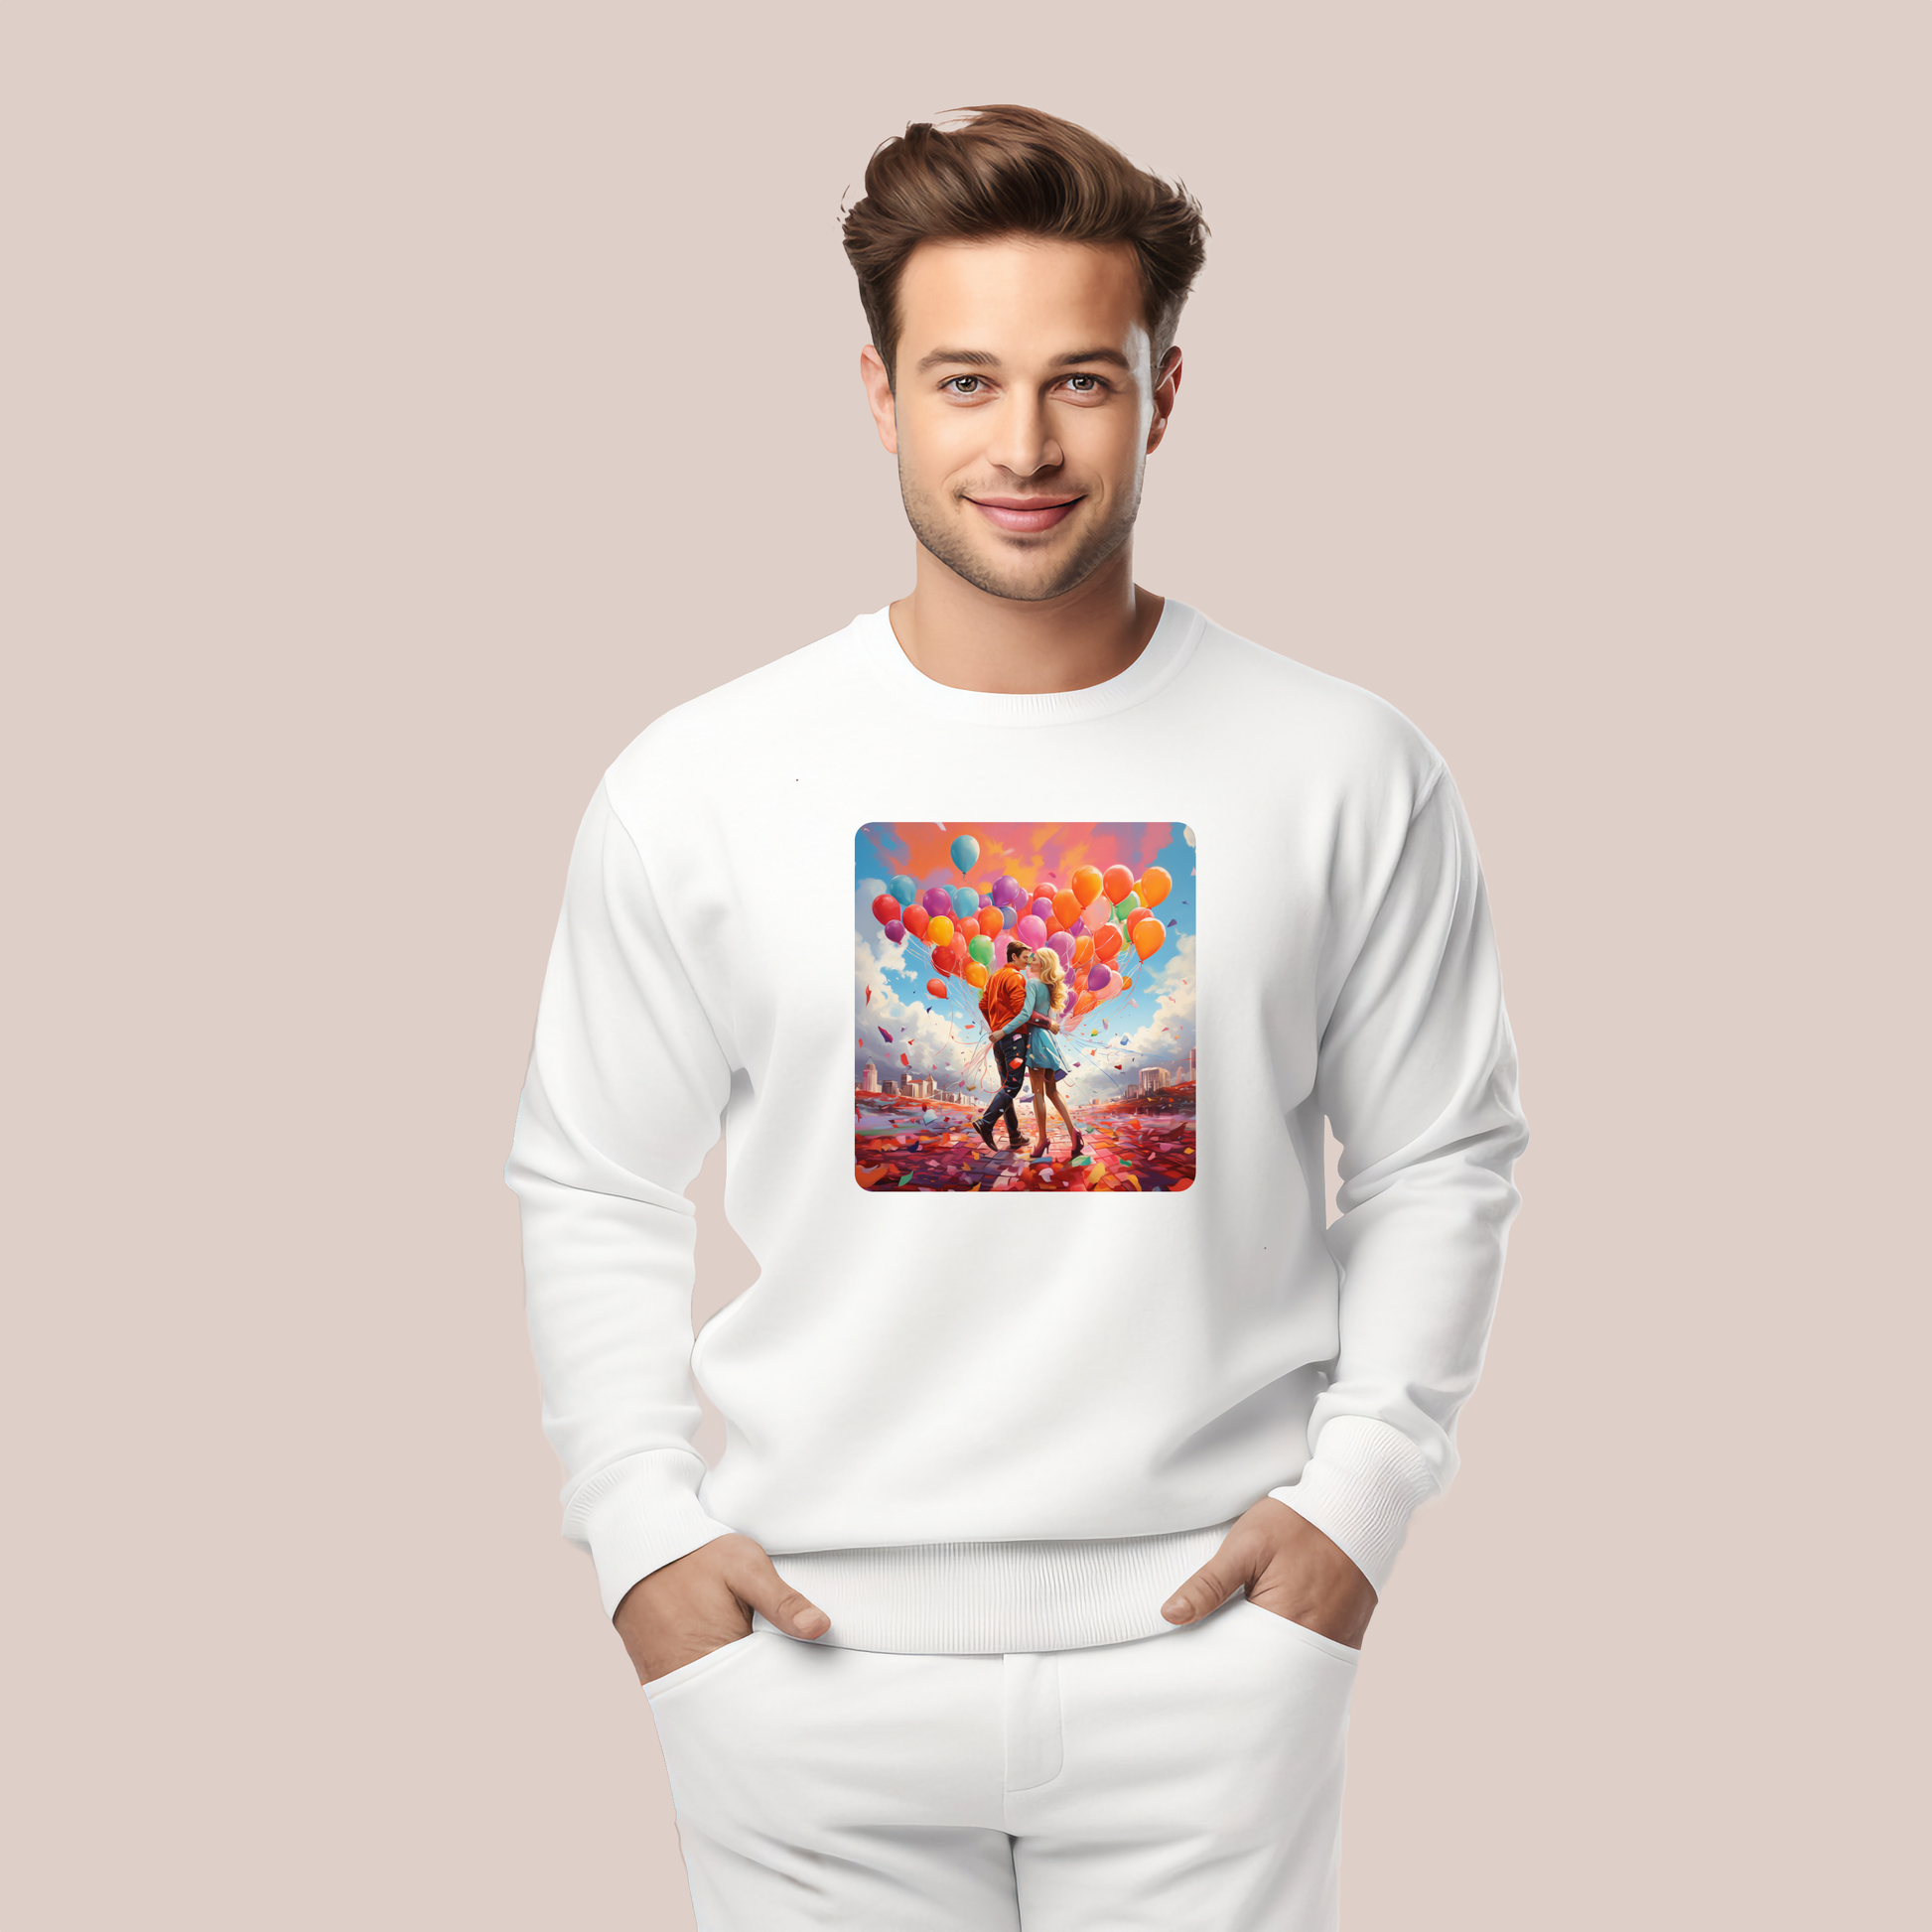 Vyriškas džemperis su spalvingu dizainu "Love Balloons", kuris perteikia meilę ir lengvumą, užrašas ant marškinėlių su pora balionų fone, Designedbyme.lt, vyriškos maikutės, dovanos internetu, ❤️ Valentino dienos kolekcija ❤️, Visi produktai, Vyriški džemperiai